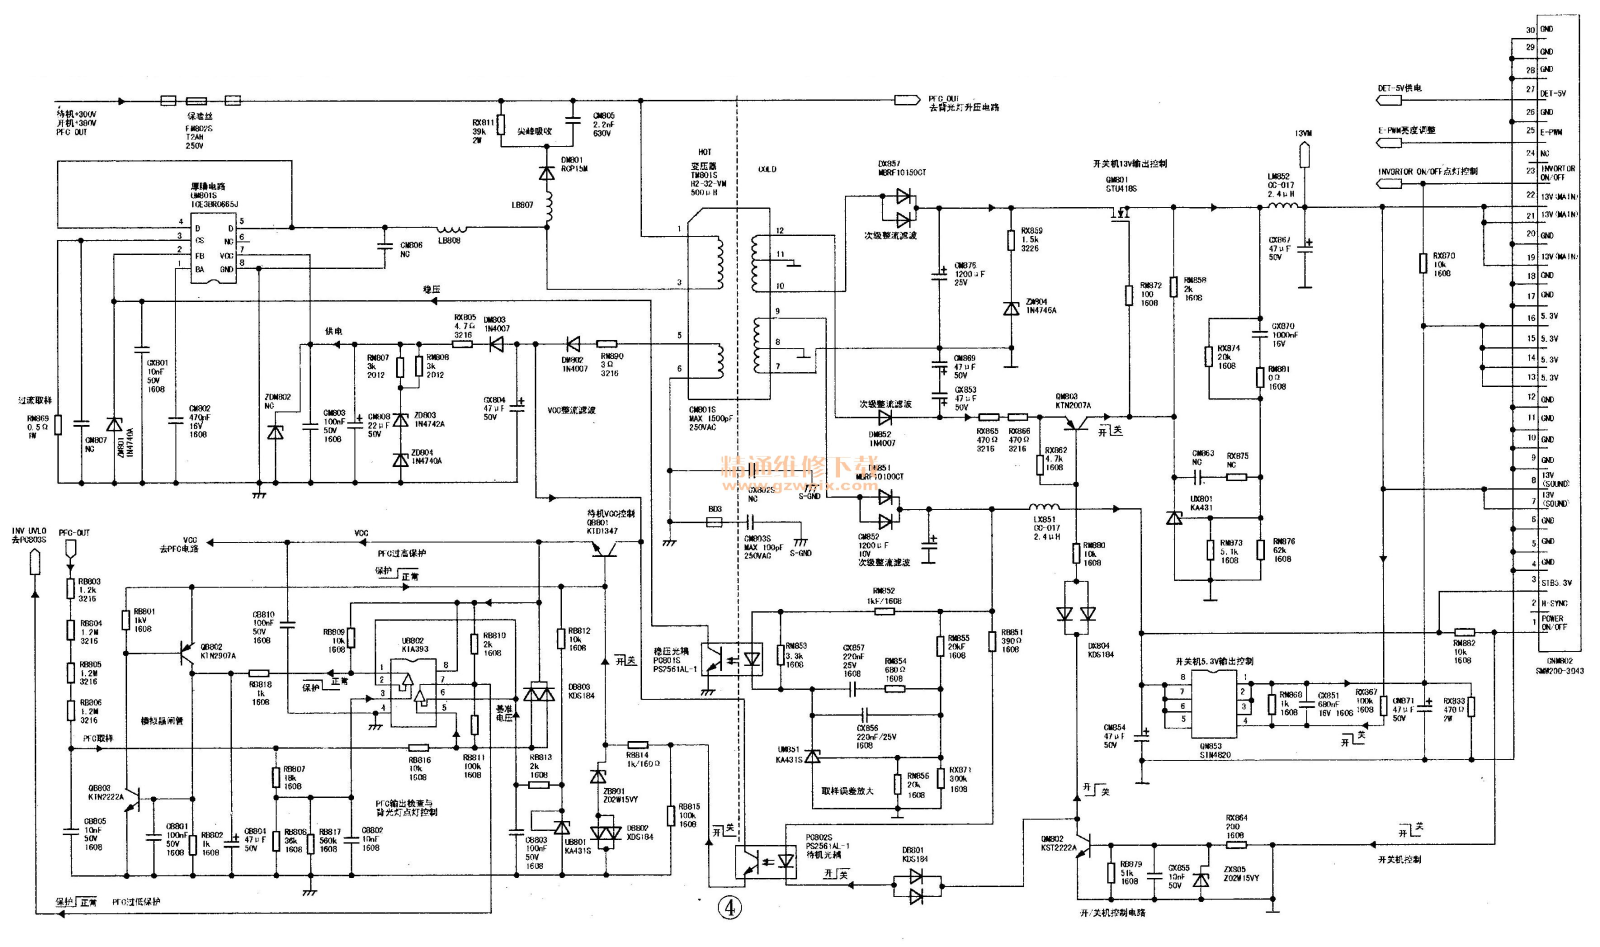 Samsung BN44-00473B PSU Schematic